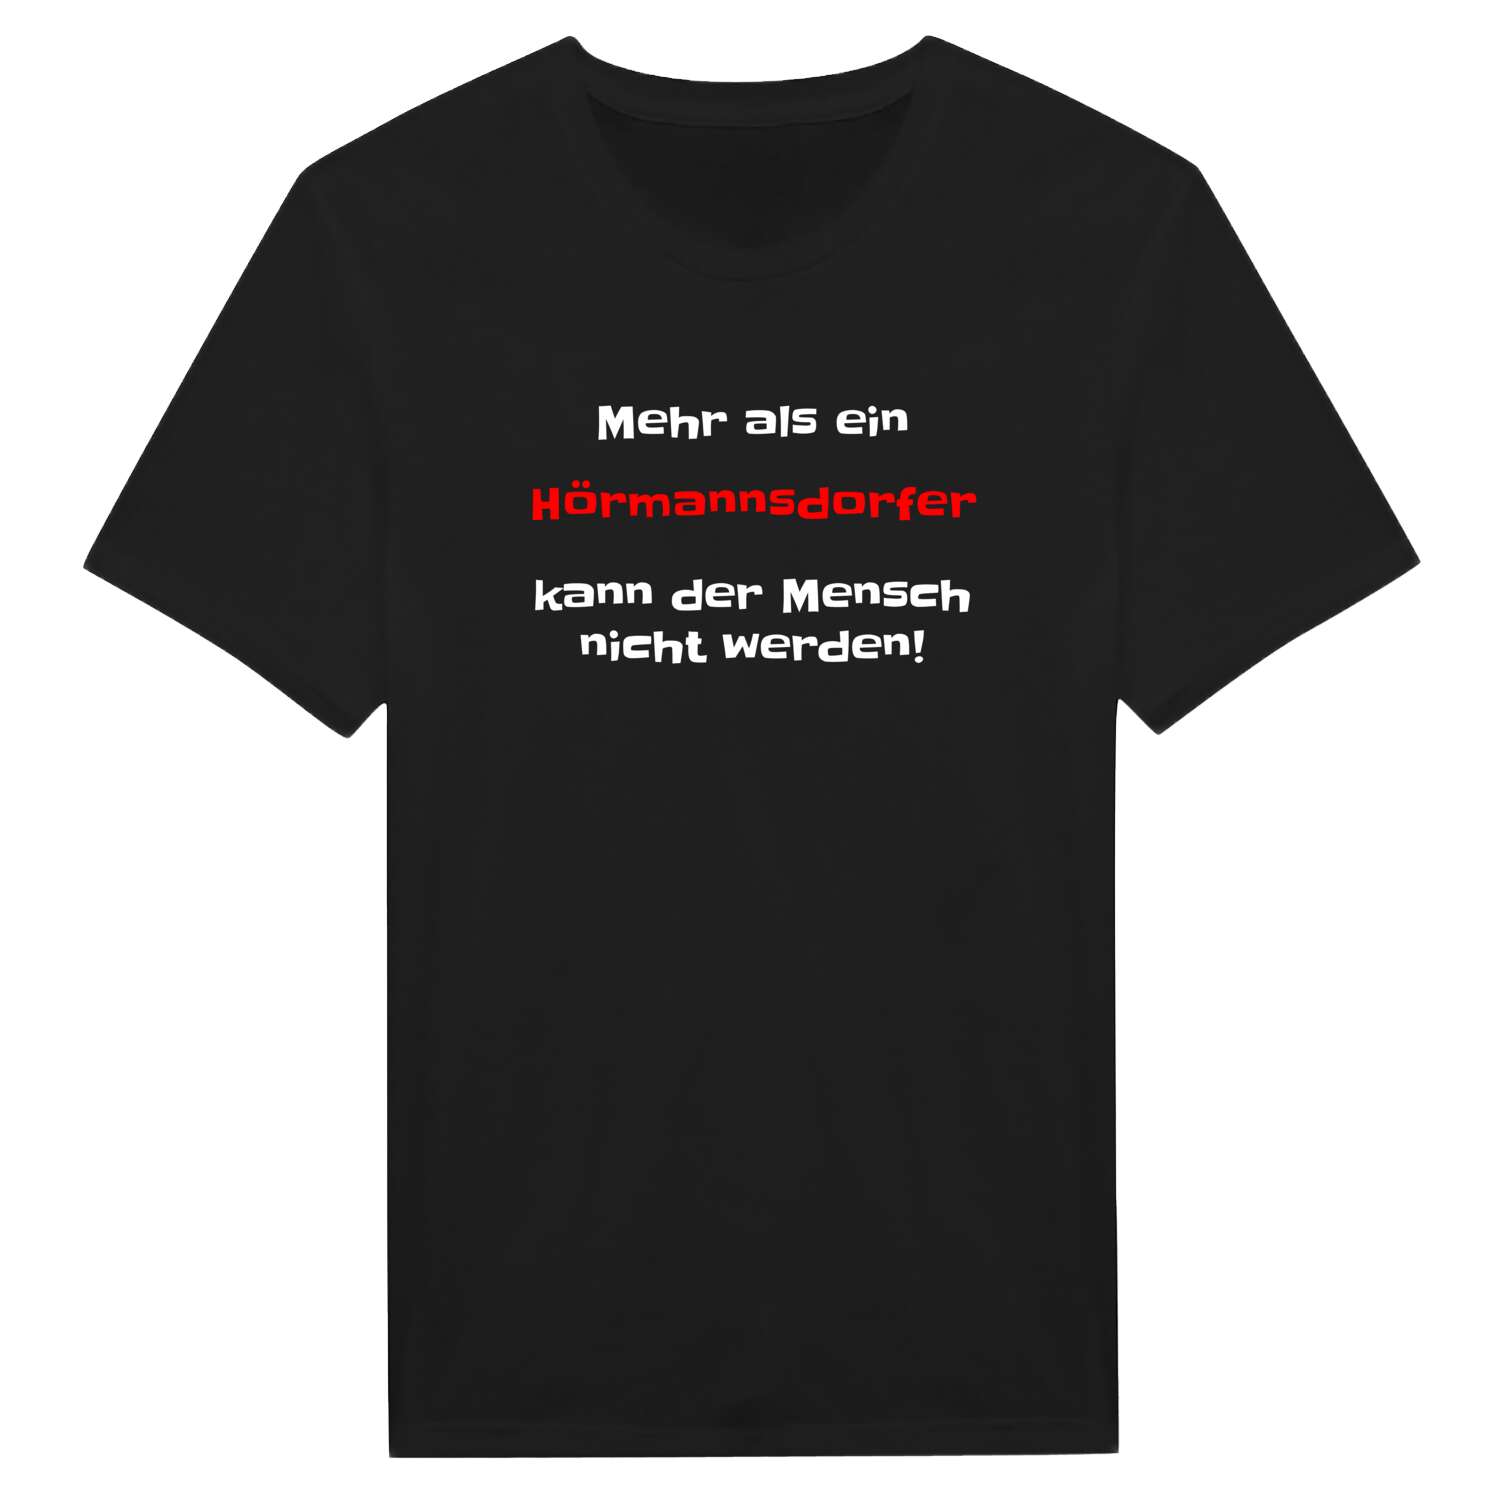 Hörmannsdorf T-Shirt »Mehr als ein«